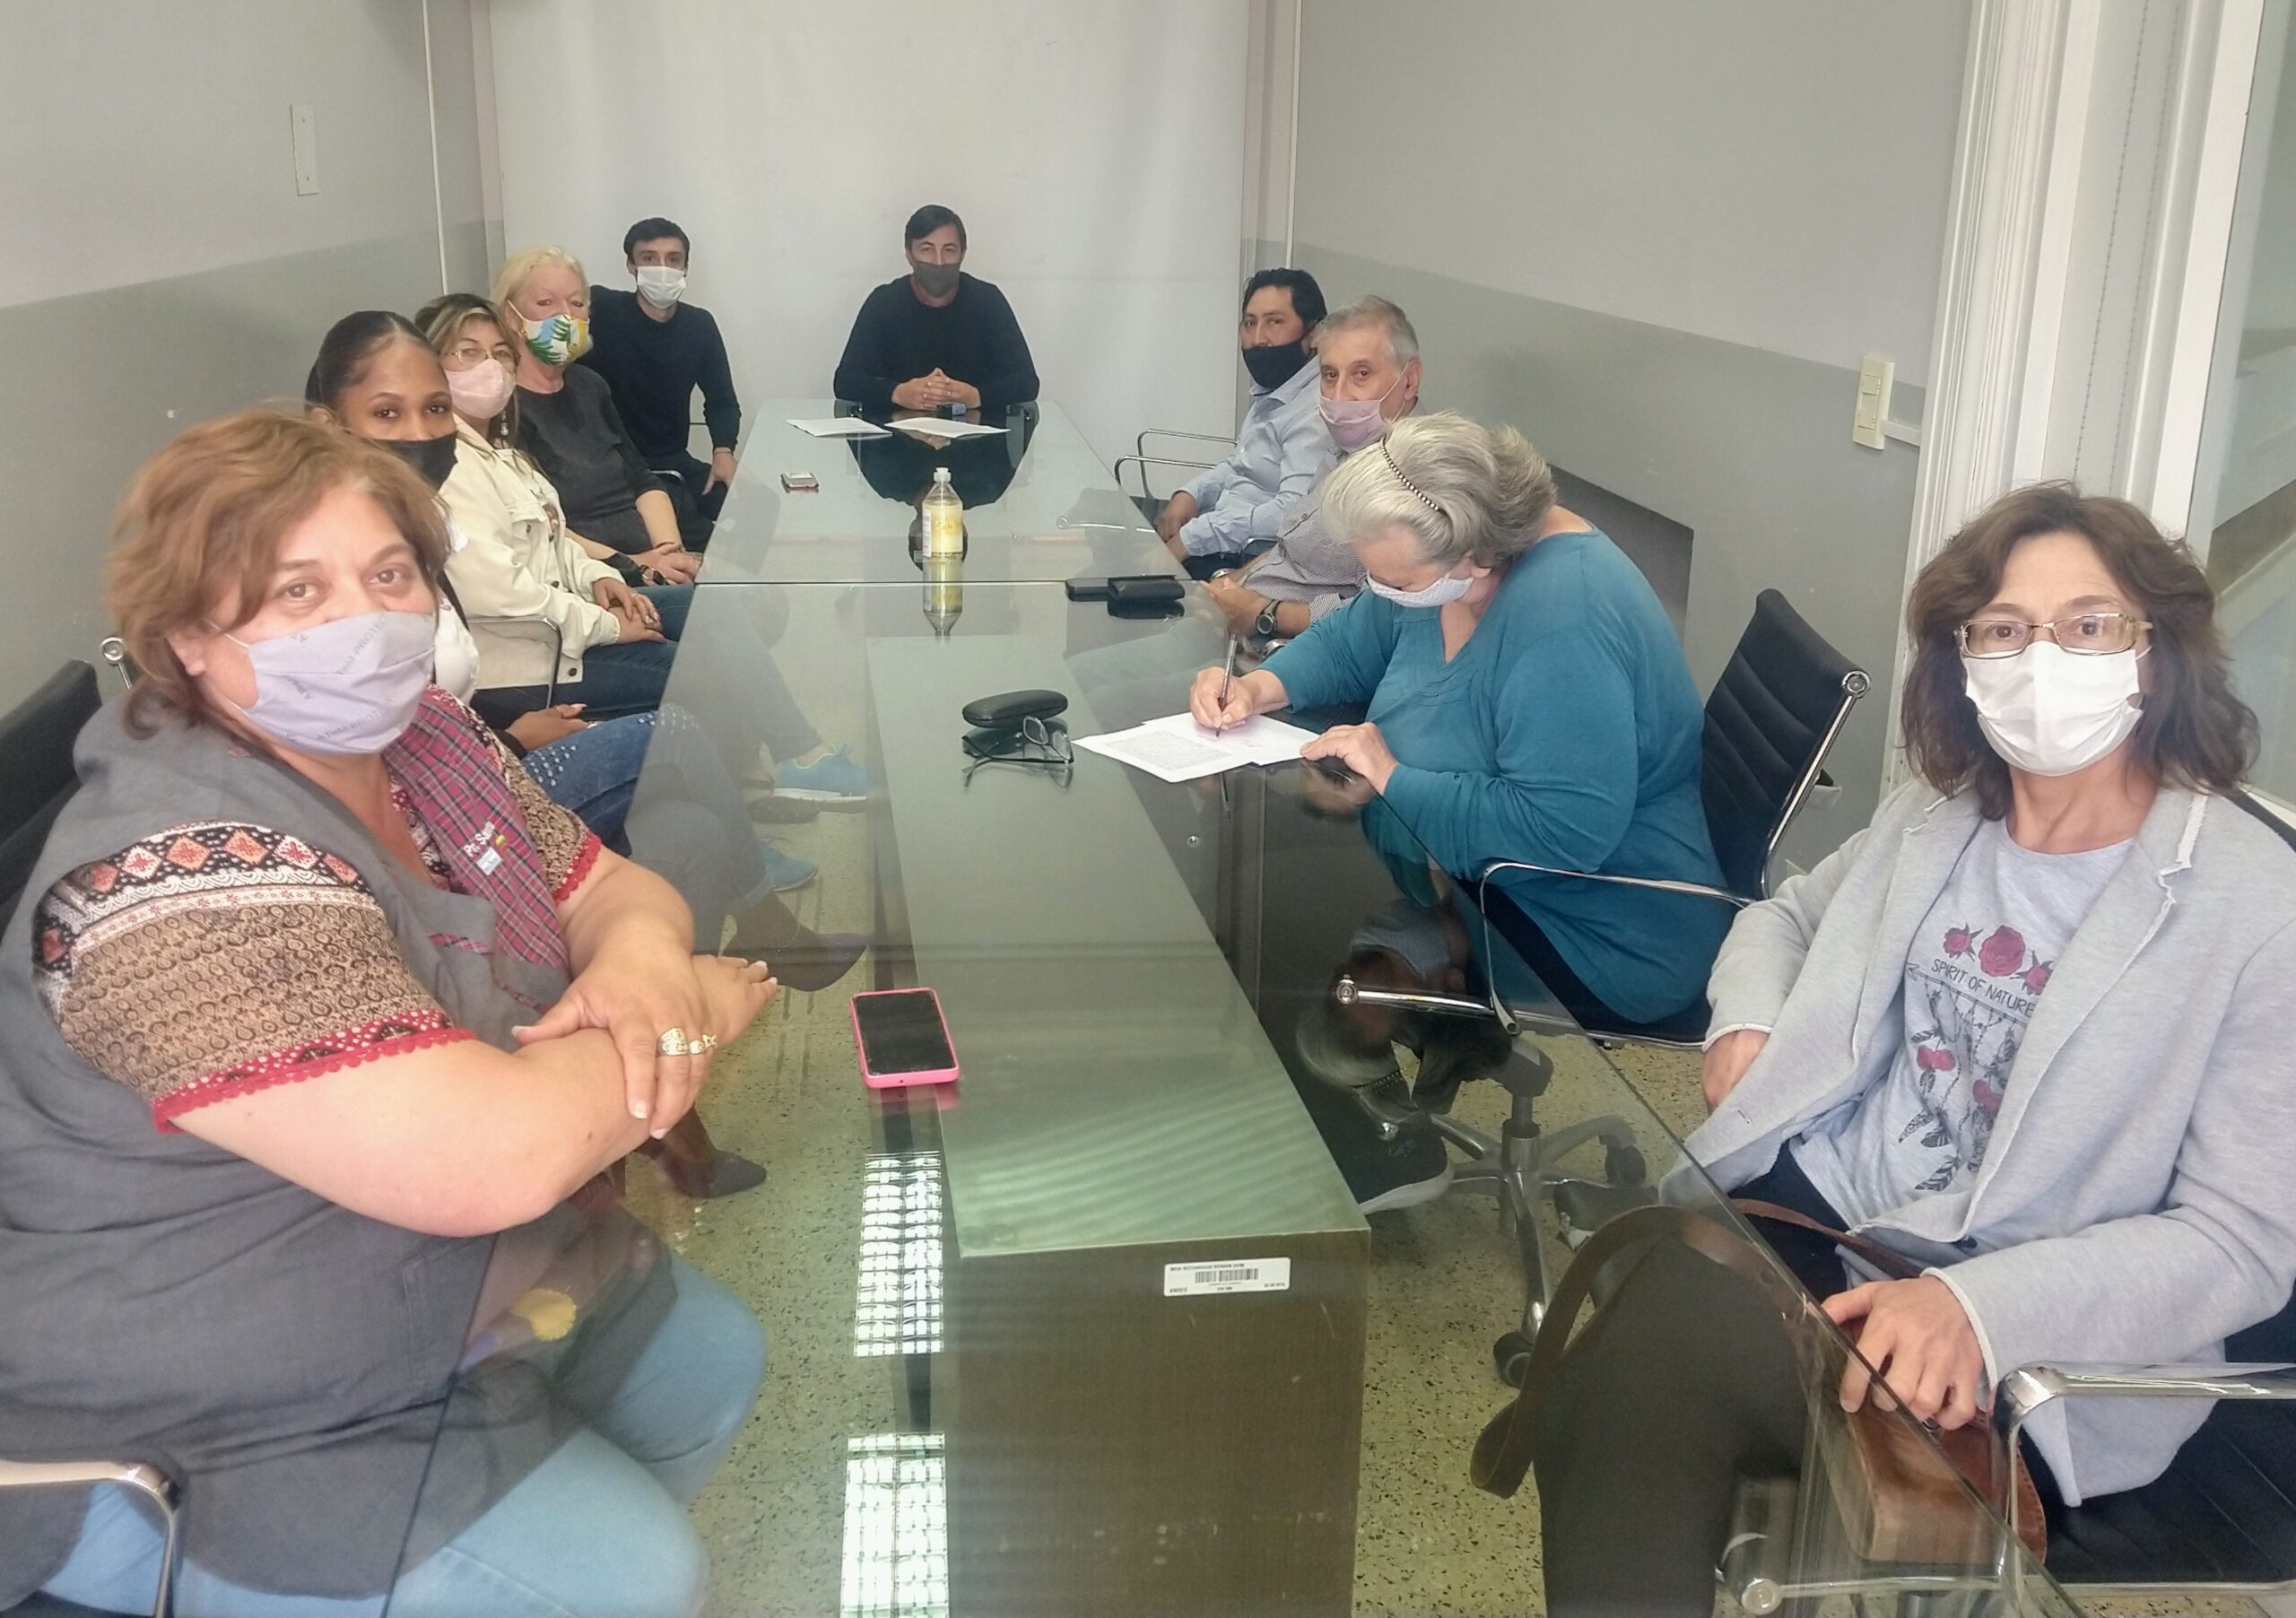 Darío Méndez: “Hoy registramos en la ANSES la primera Asociación Civil encuadrada en el convenio con el Ministerio de Justicia Bonaerense»